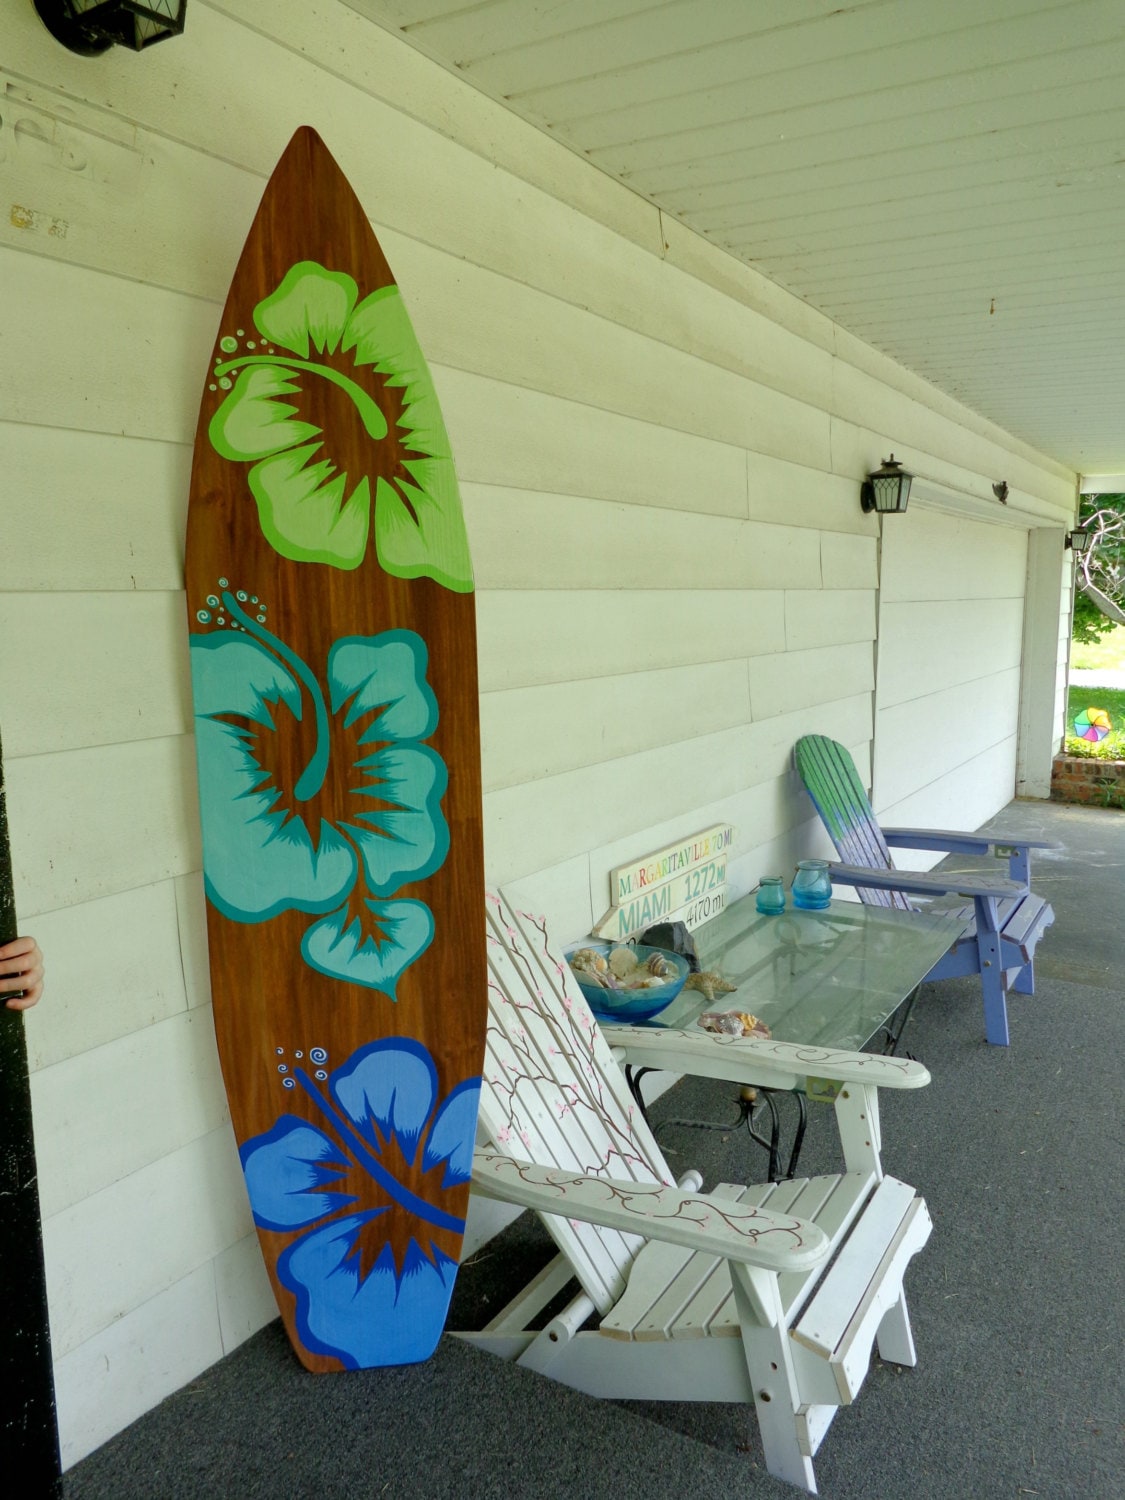 Wood Surfboard Wall Art